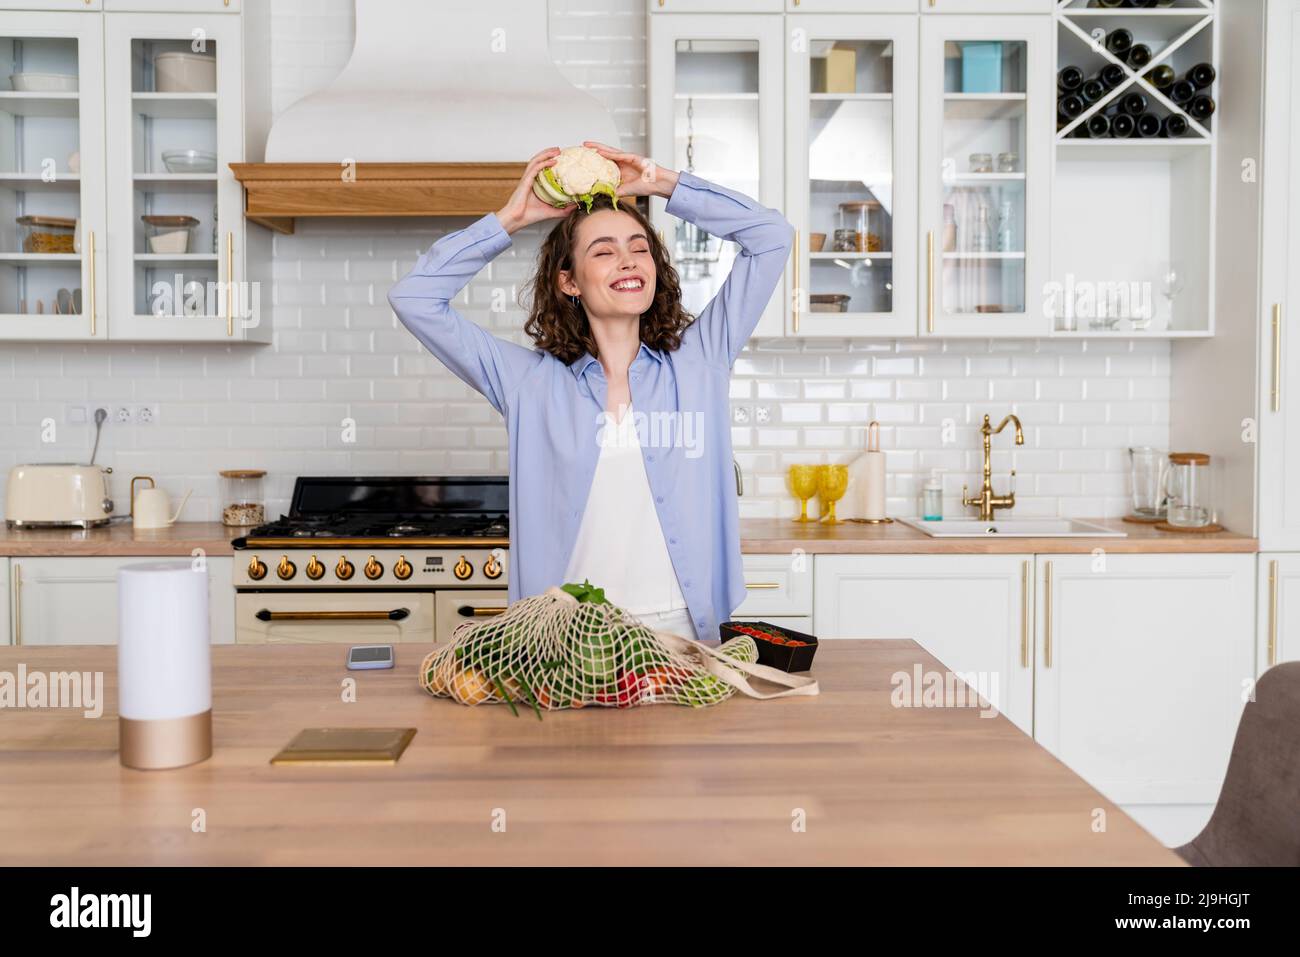 Femme souriante tenant le chou-fleur sur la tête dans la cuisine Banque D'Images